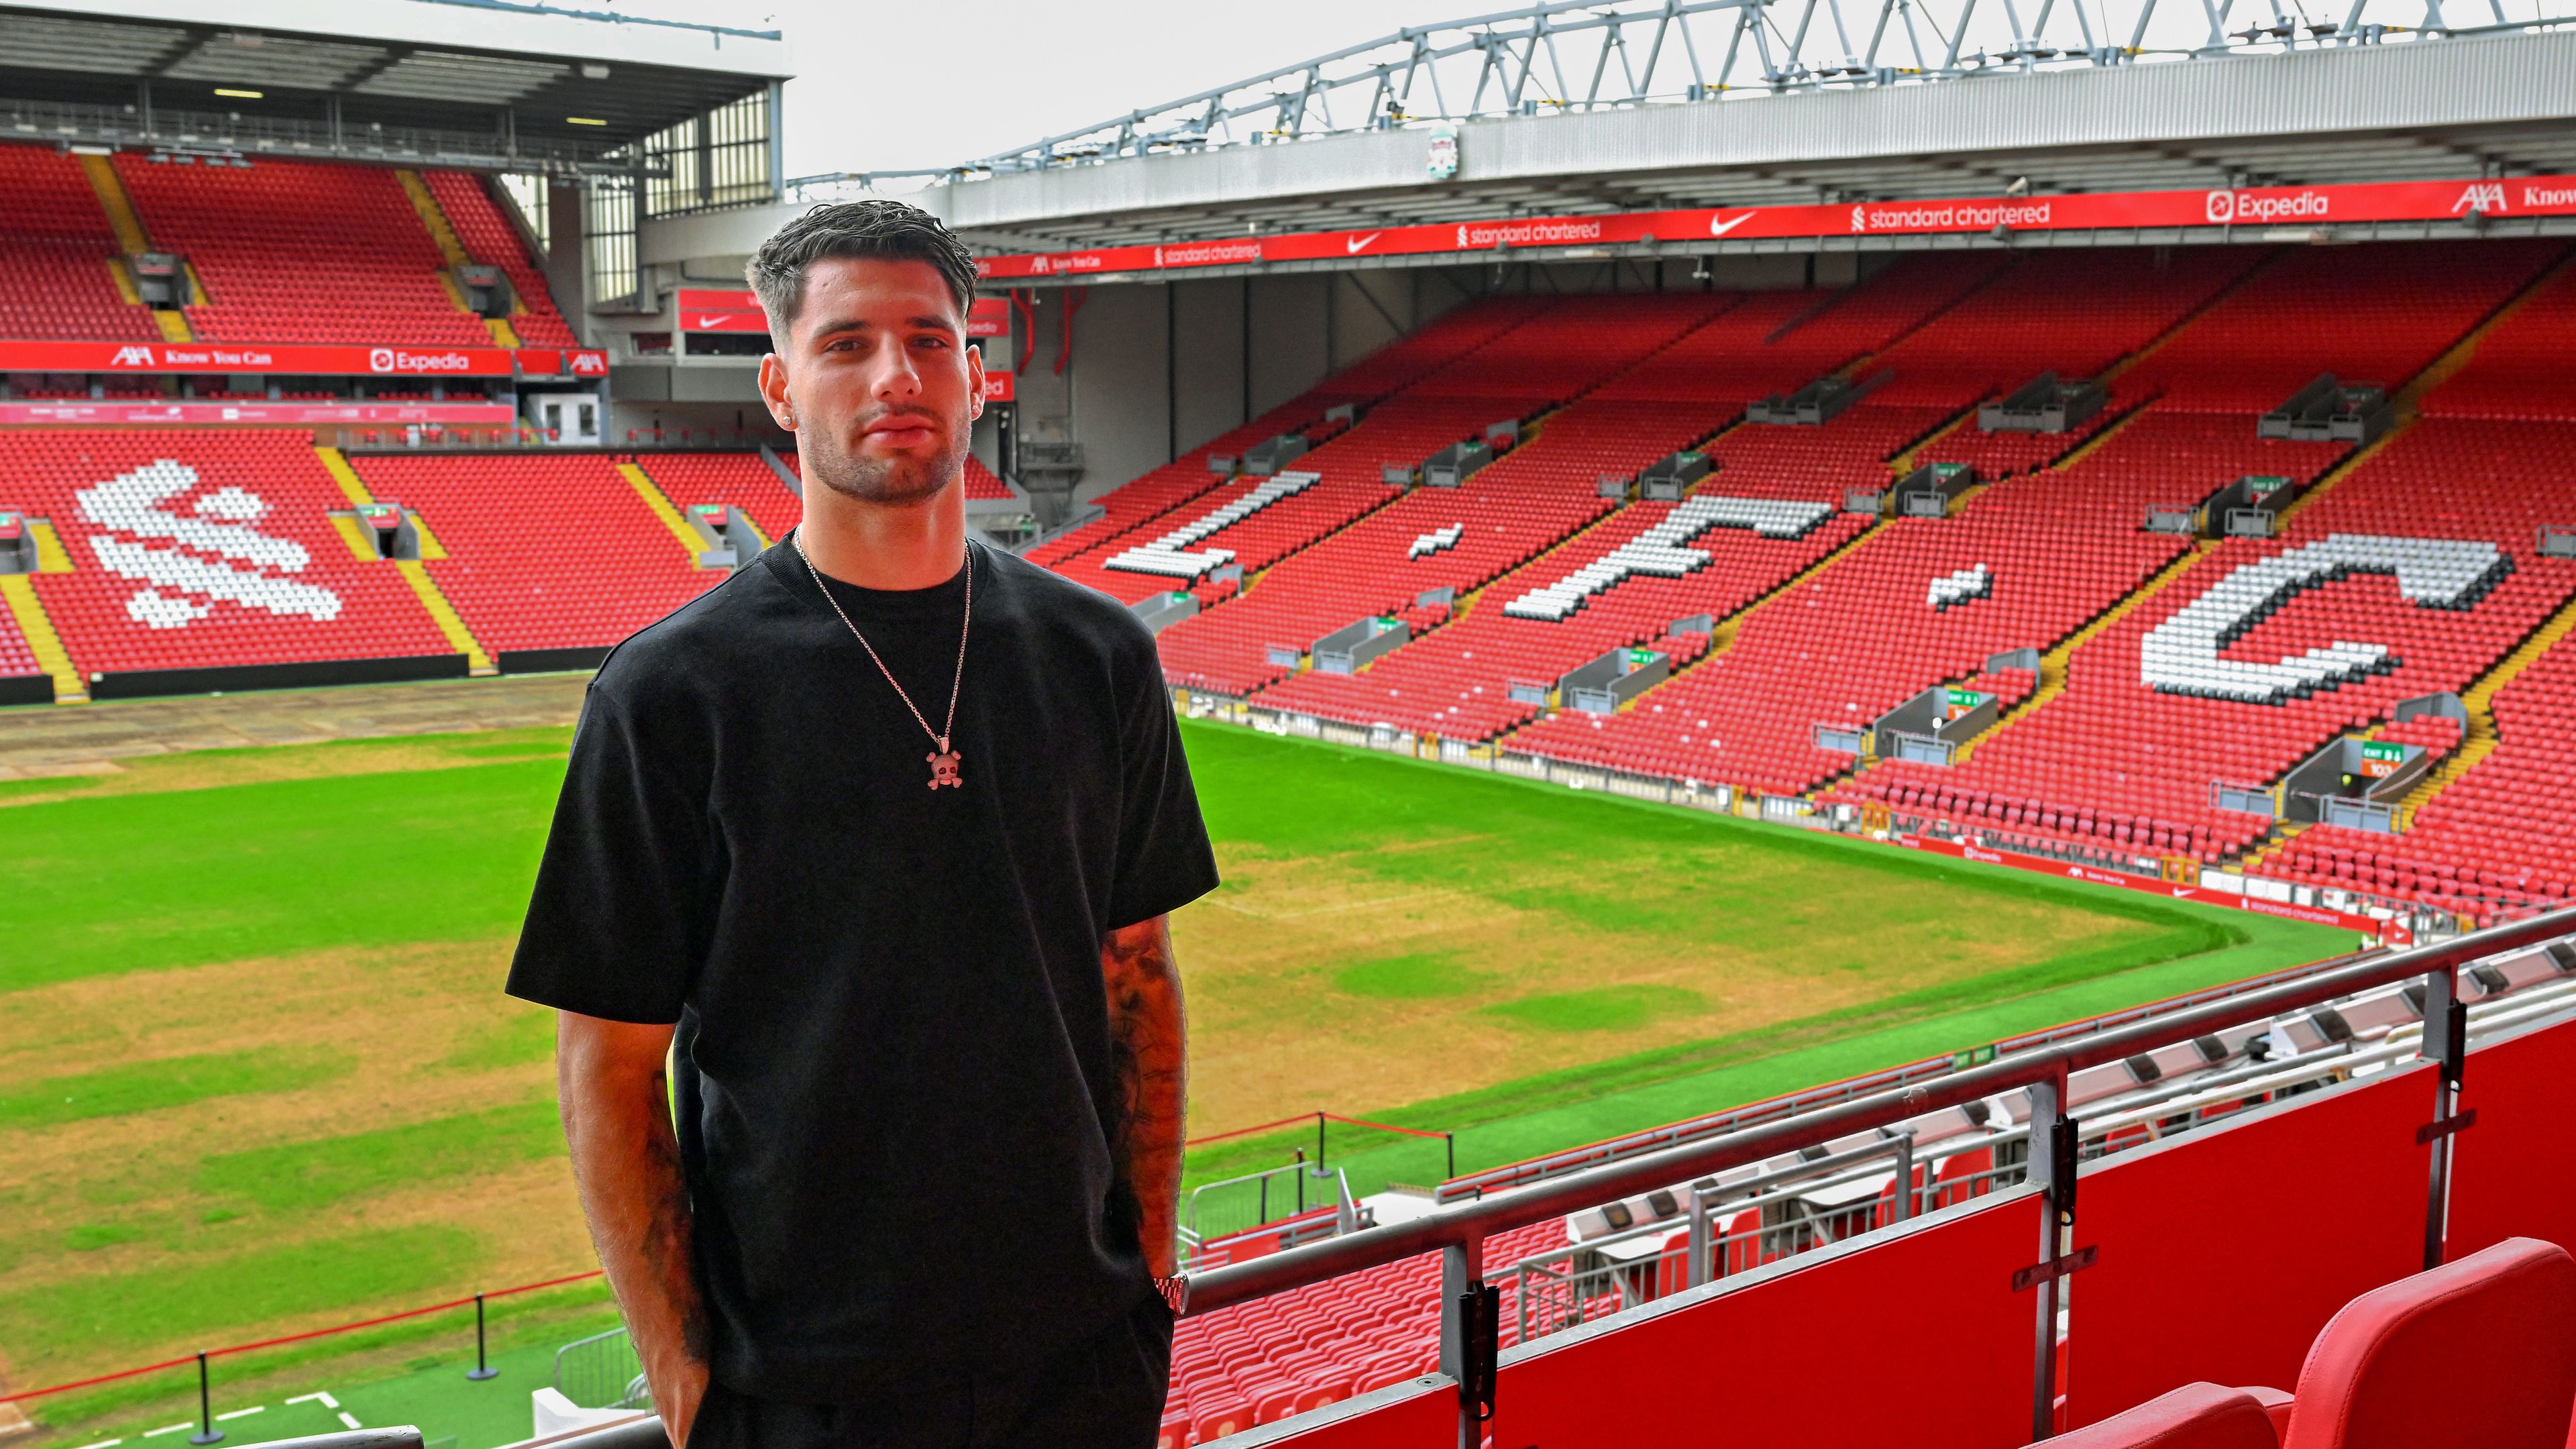 A Liverpoolhoz szerződő Szoboszlai Dominik az Anfield varázsáról és az előtte álló kihívásokról is beszélt a Sportálnak adott interjúban